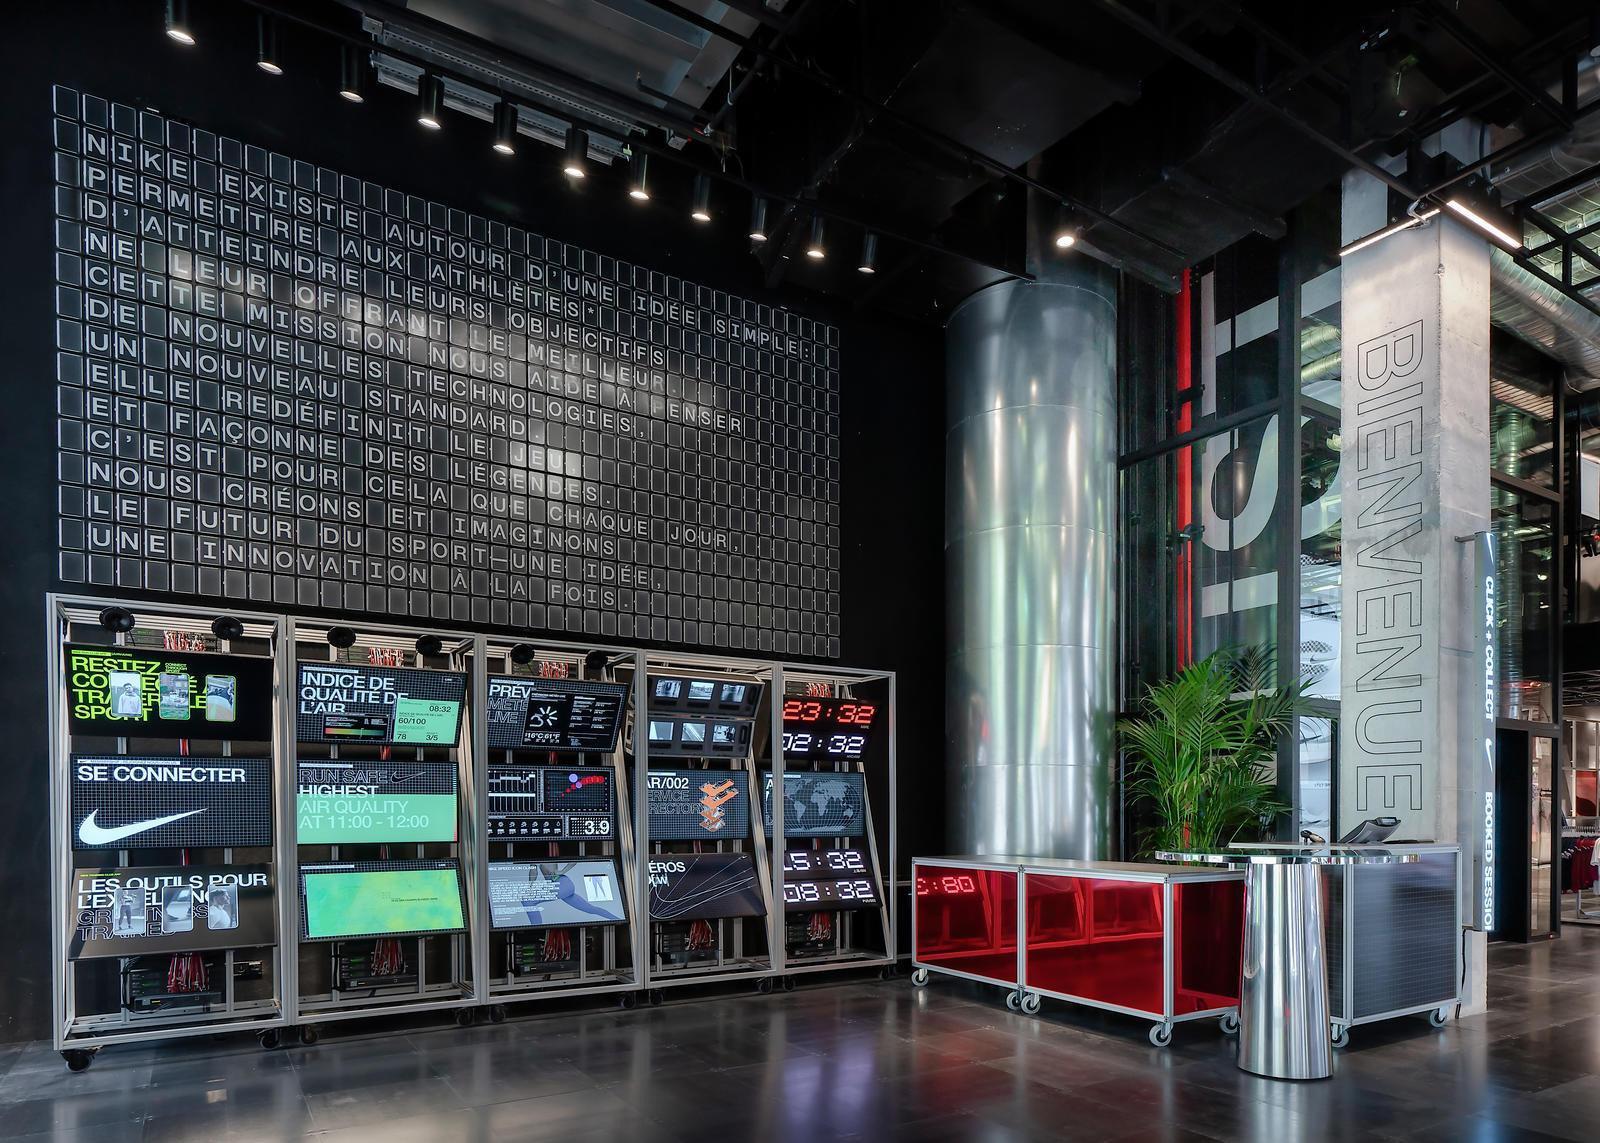 nouveau magasin Nike sur les Champs-Elysées ouvre ses portes - Sortiraparis.com